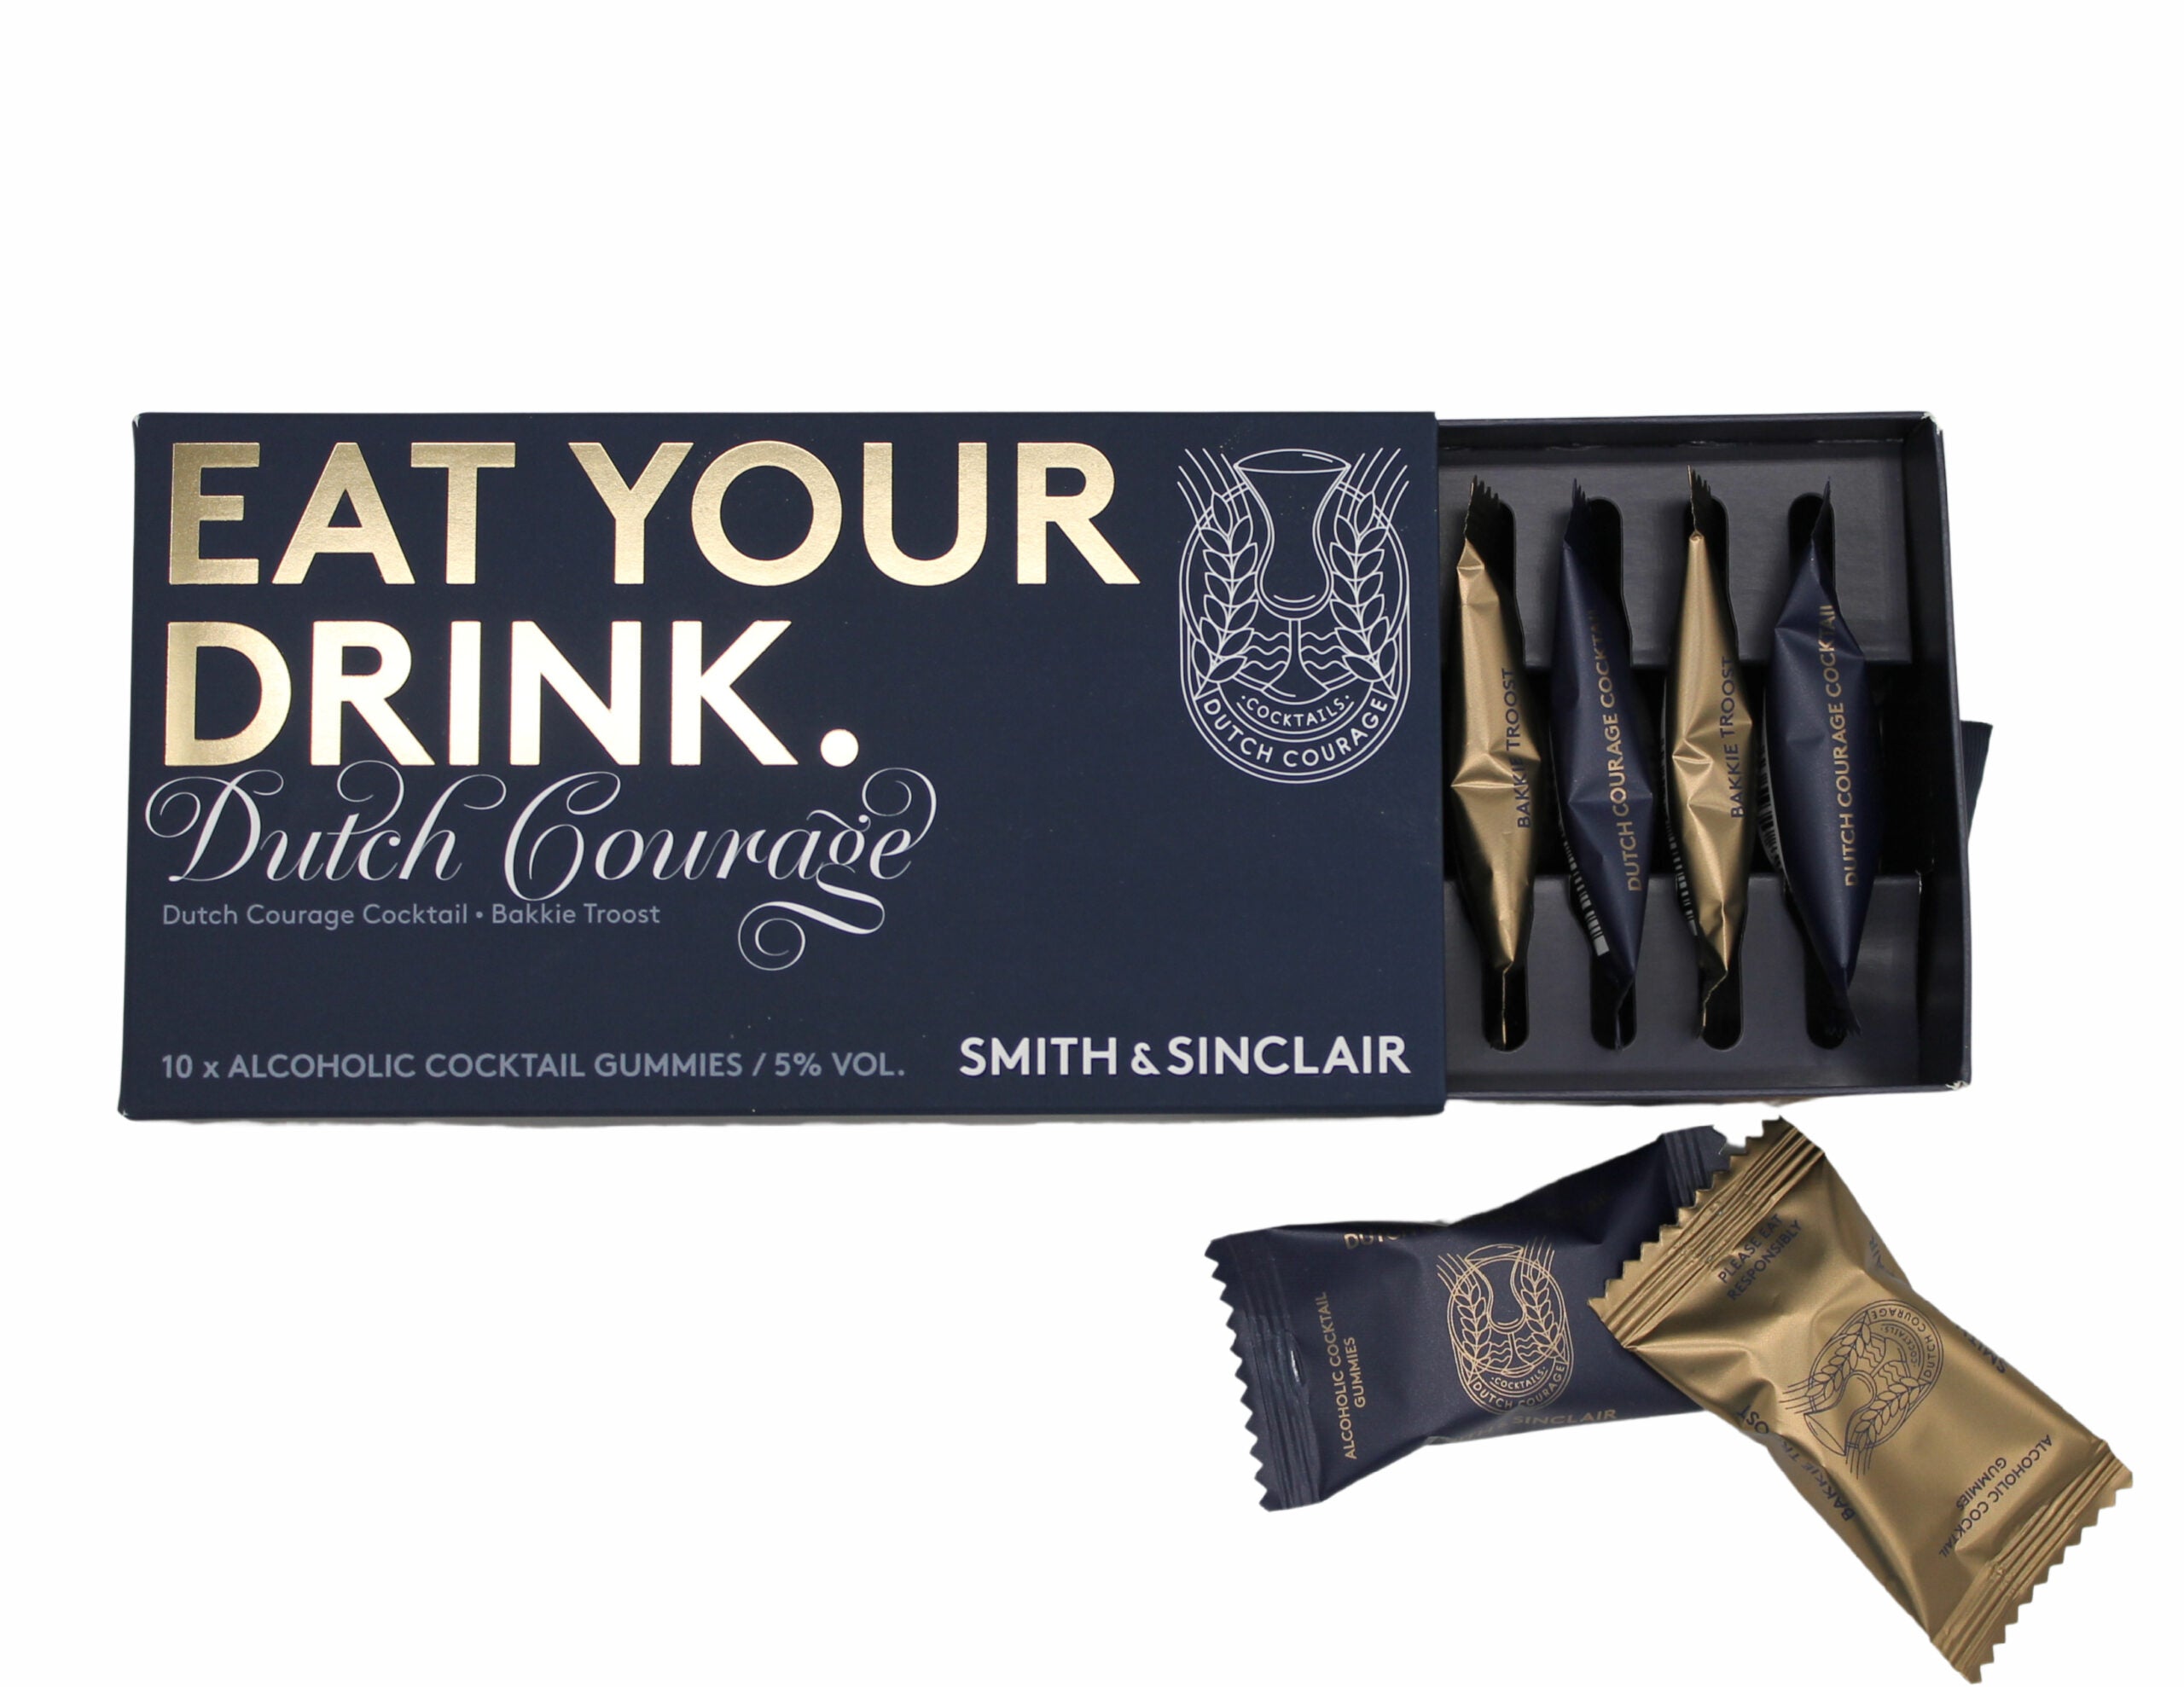 Eat Your Drink: Hollandse Courage Cocktails